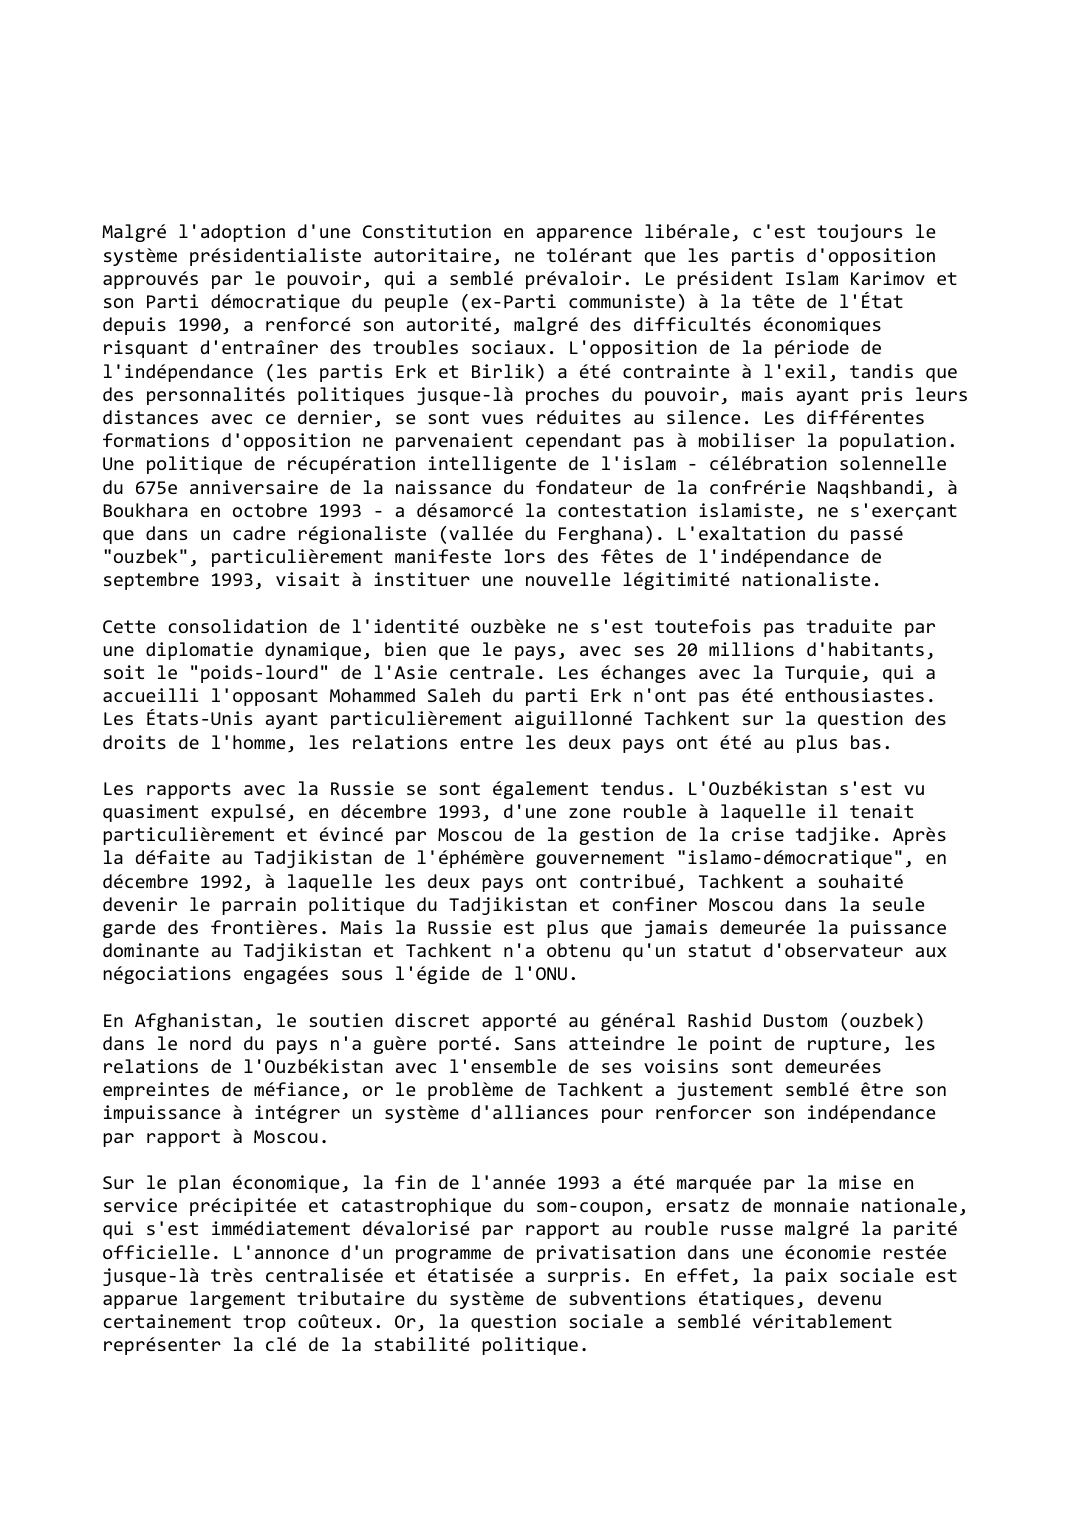 Prévisualisation du document Ouzbékistan (1993-1994)